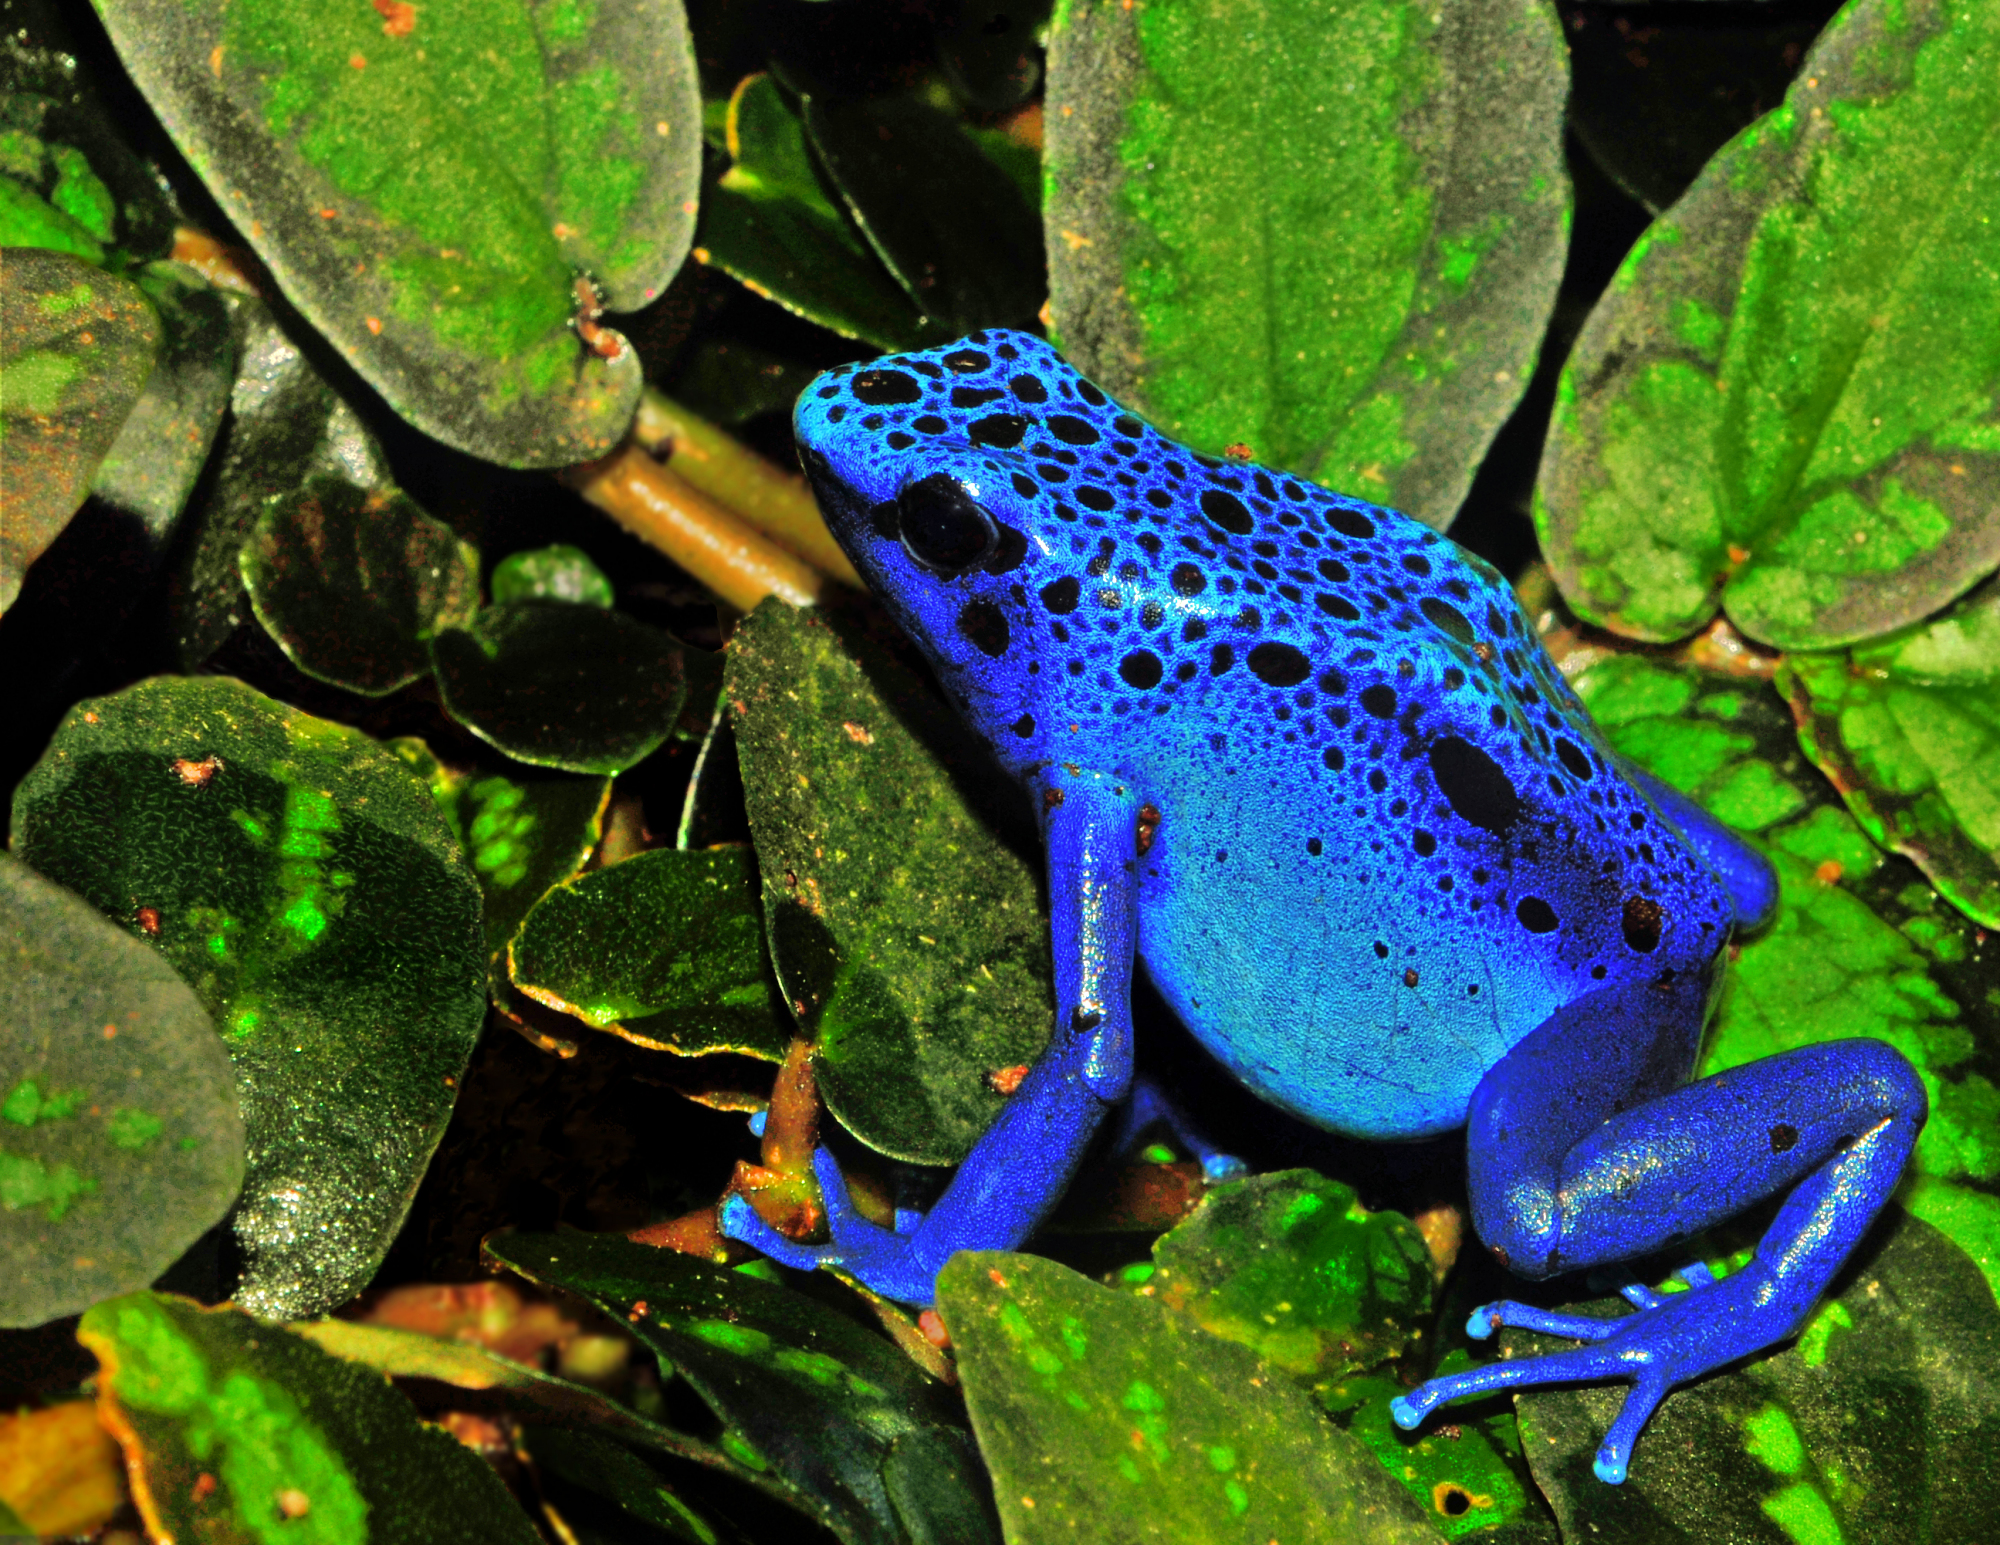 地球之肺亚马逊雨林,美丽的毒箭蛙和透明的玻璃蛙,有什么异同?